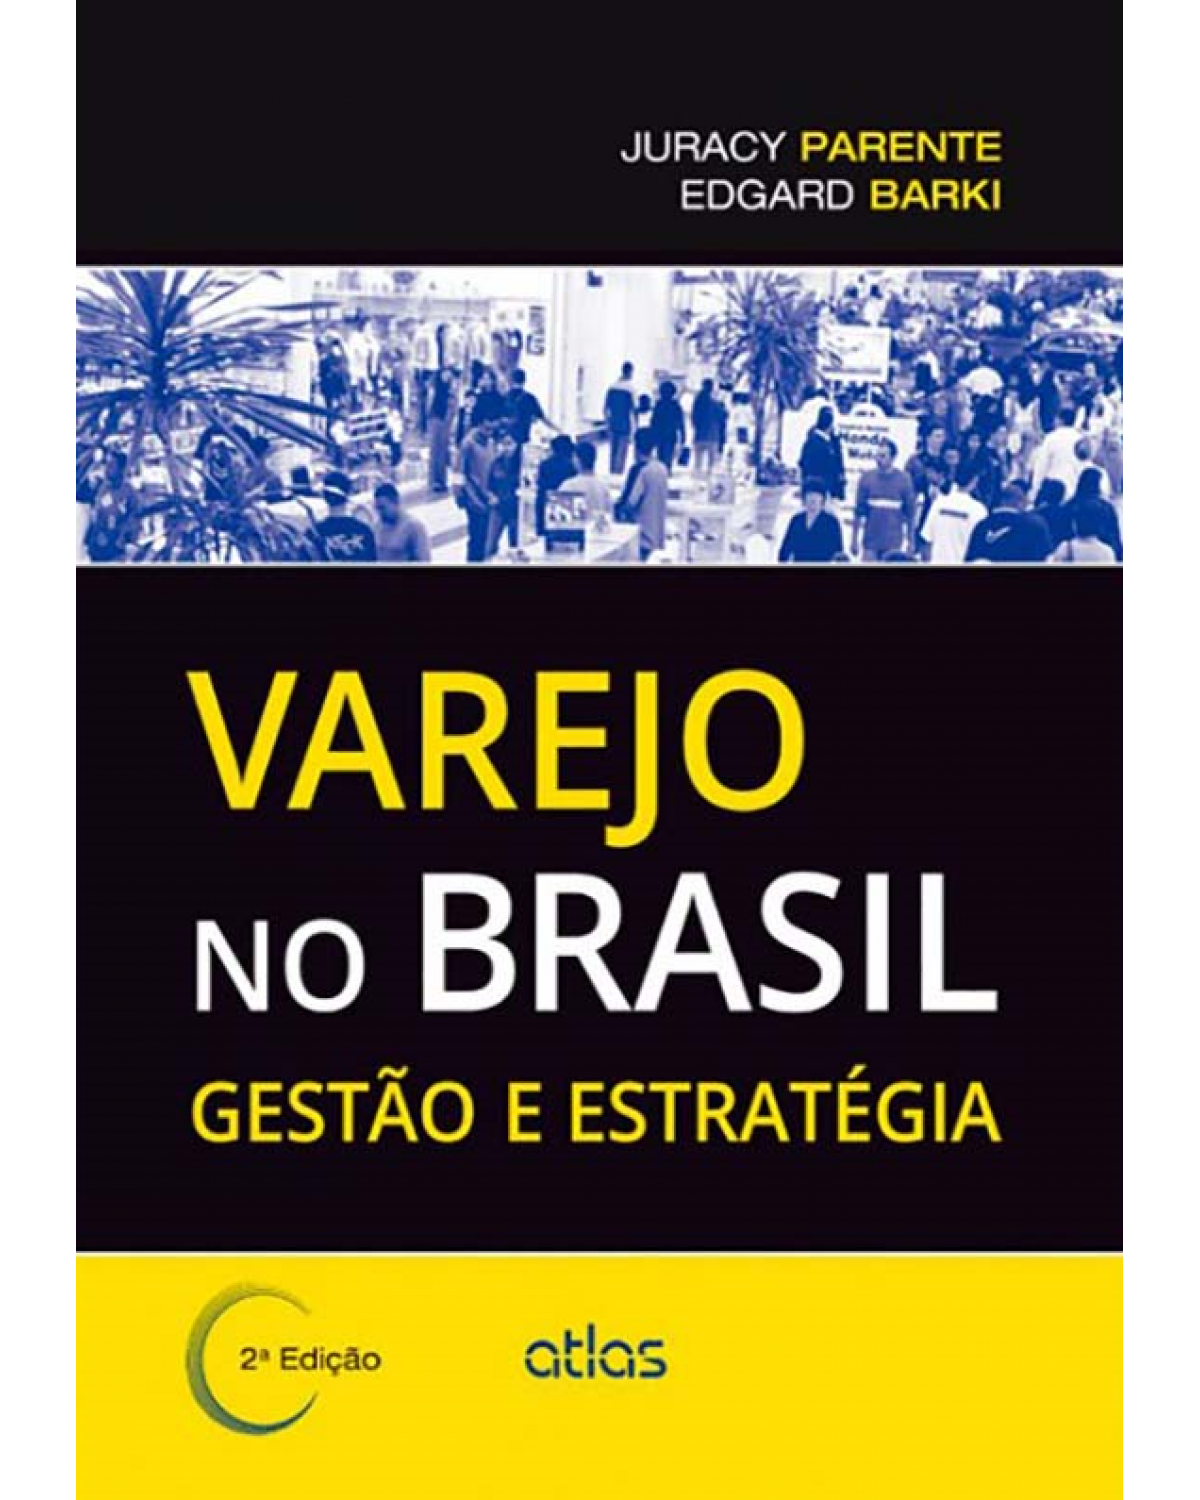 Varejo no Brasil - Gestão e estratégia - 2ª Edição | 2014